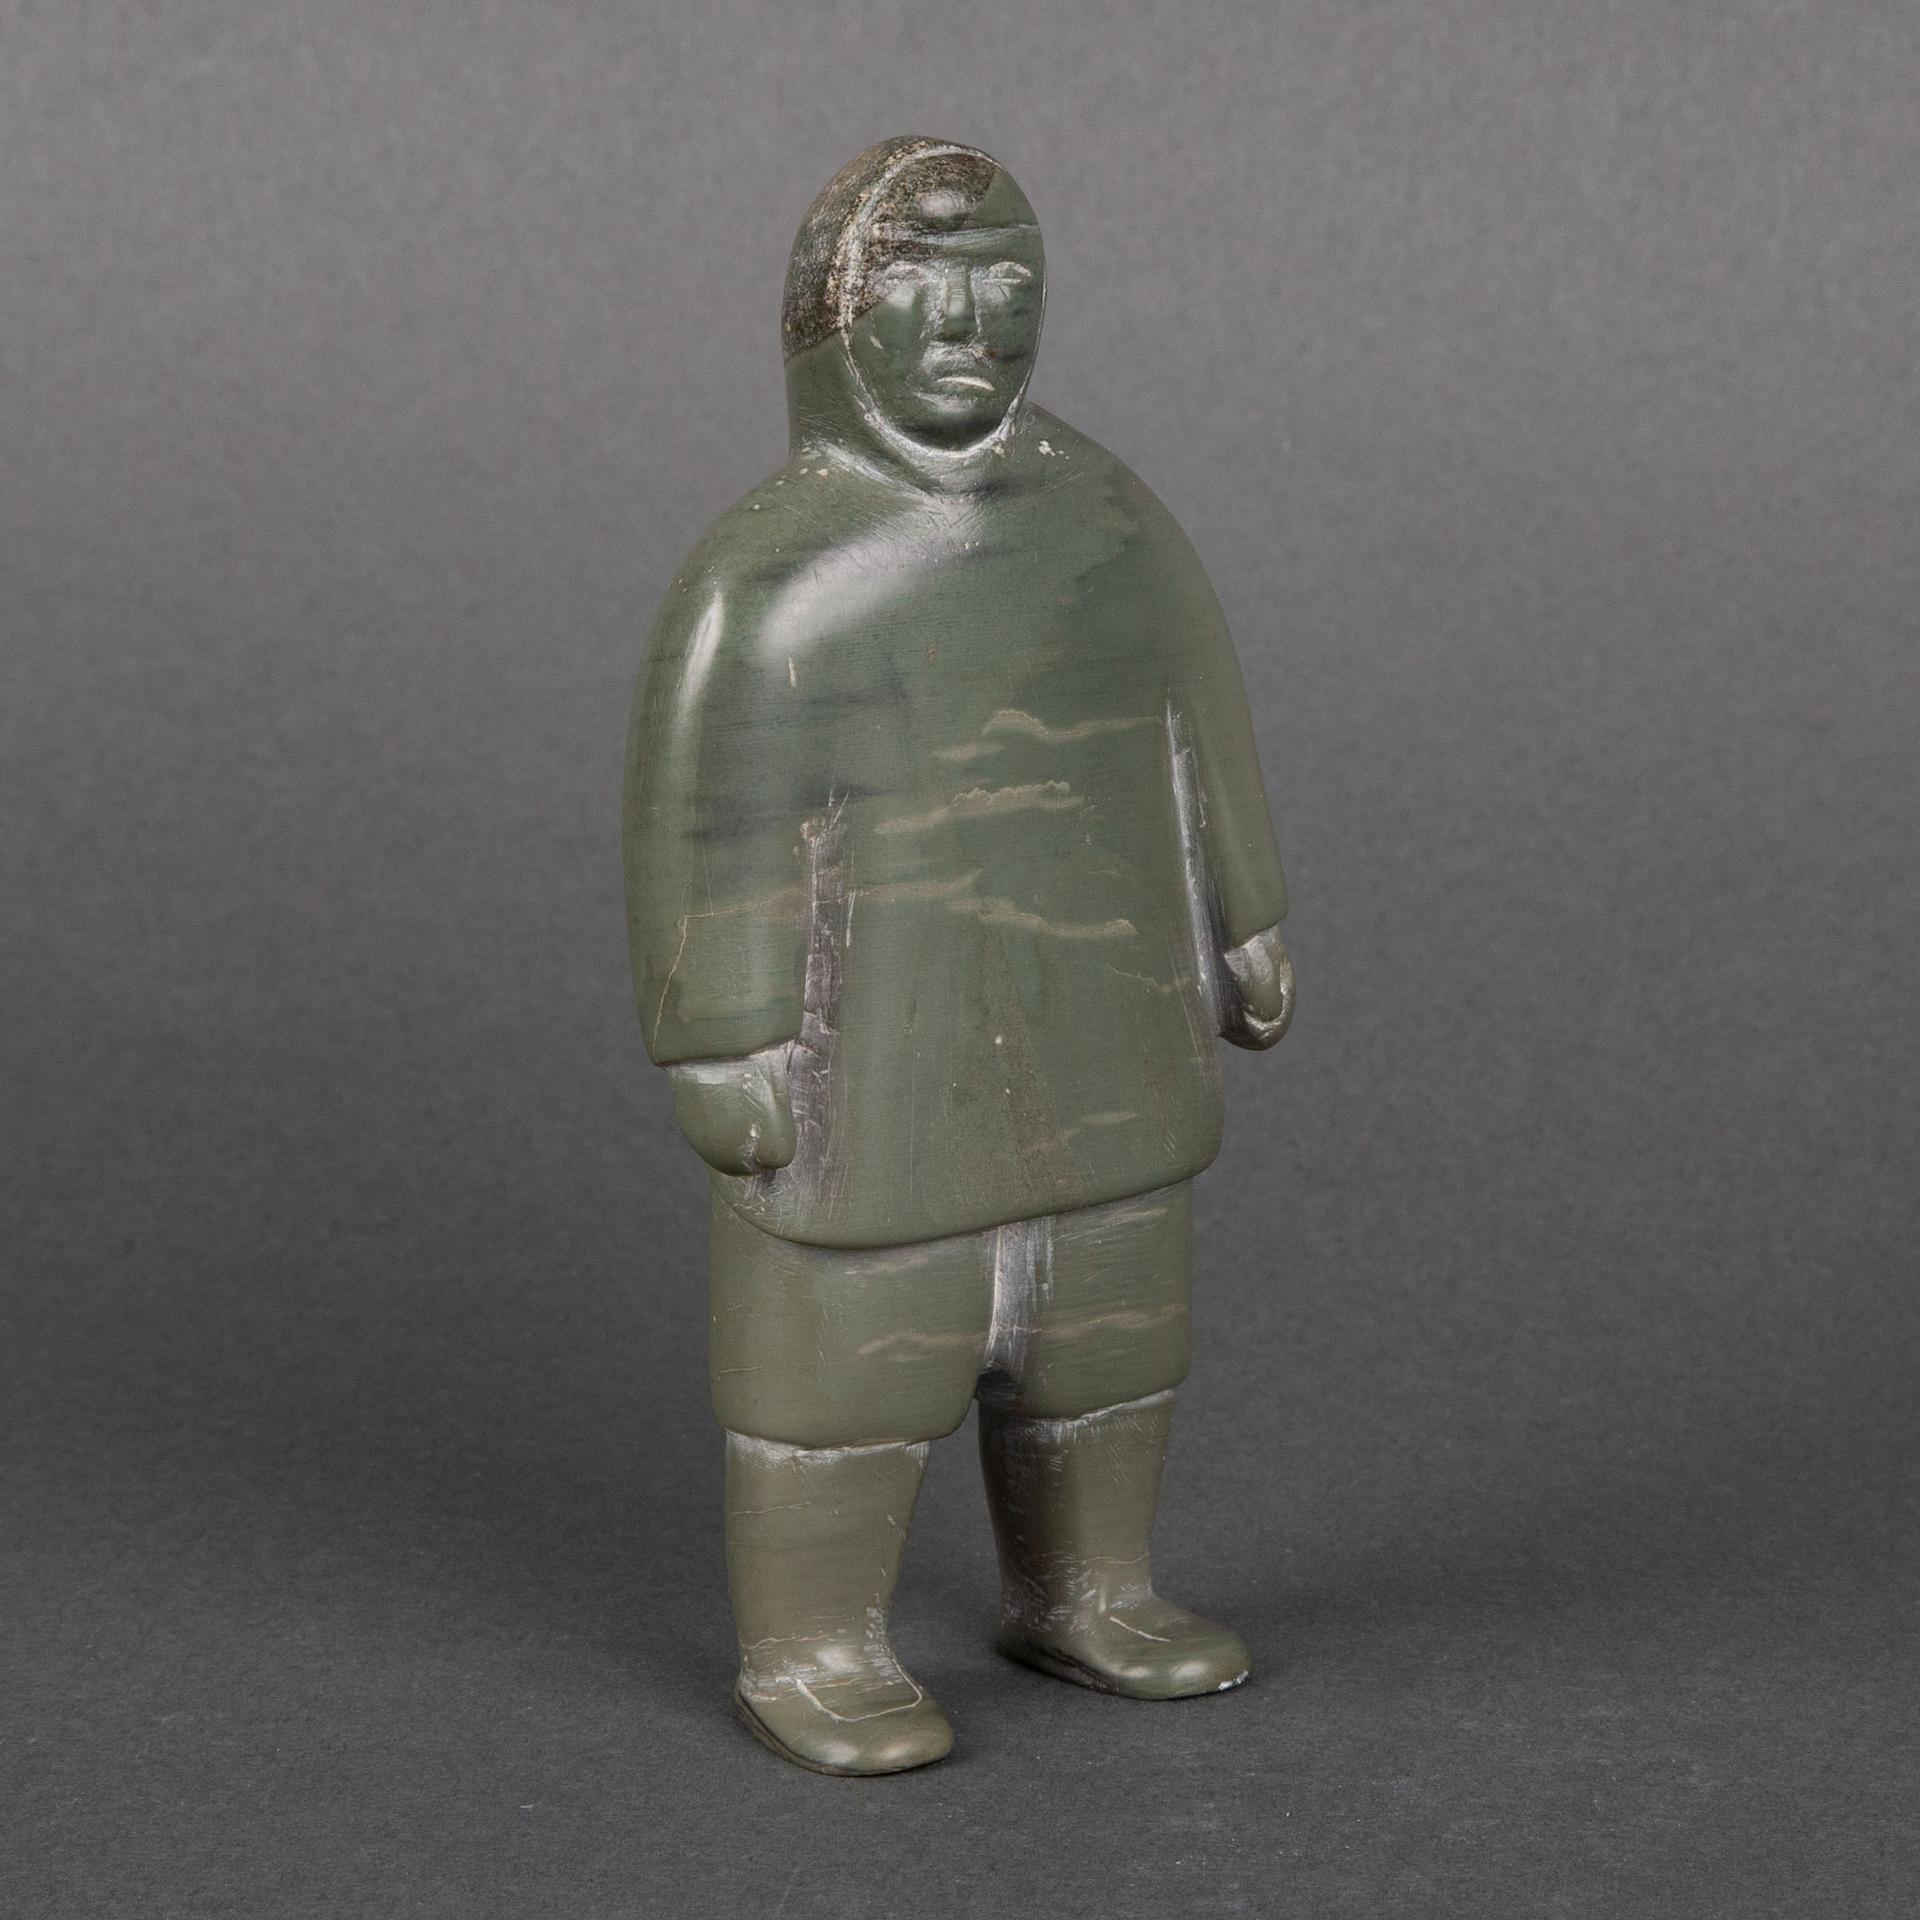 Zebedee Tattatuapik Enoogoo (1931) - Standing Figure